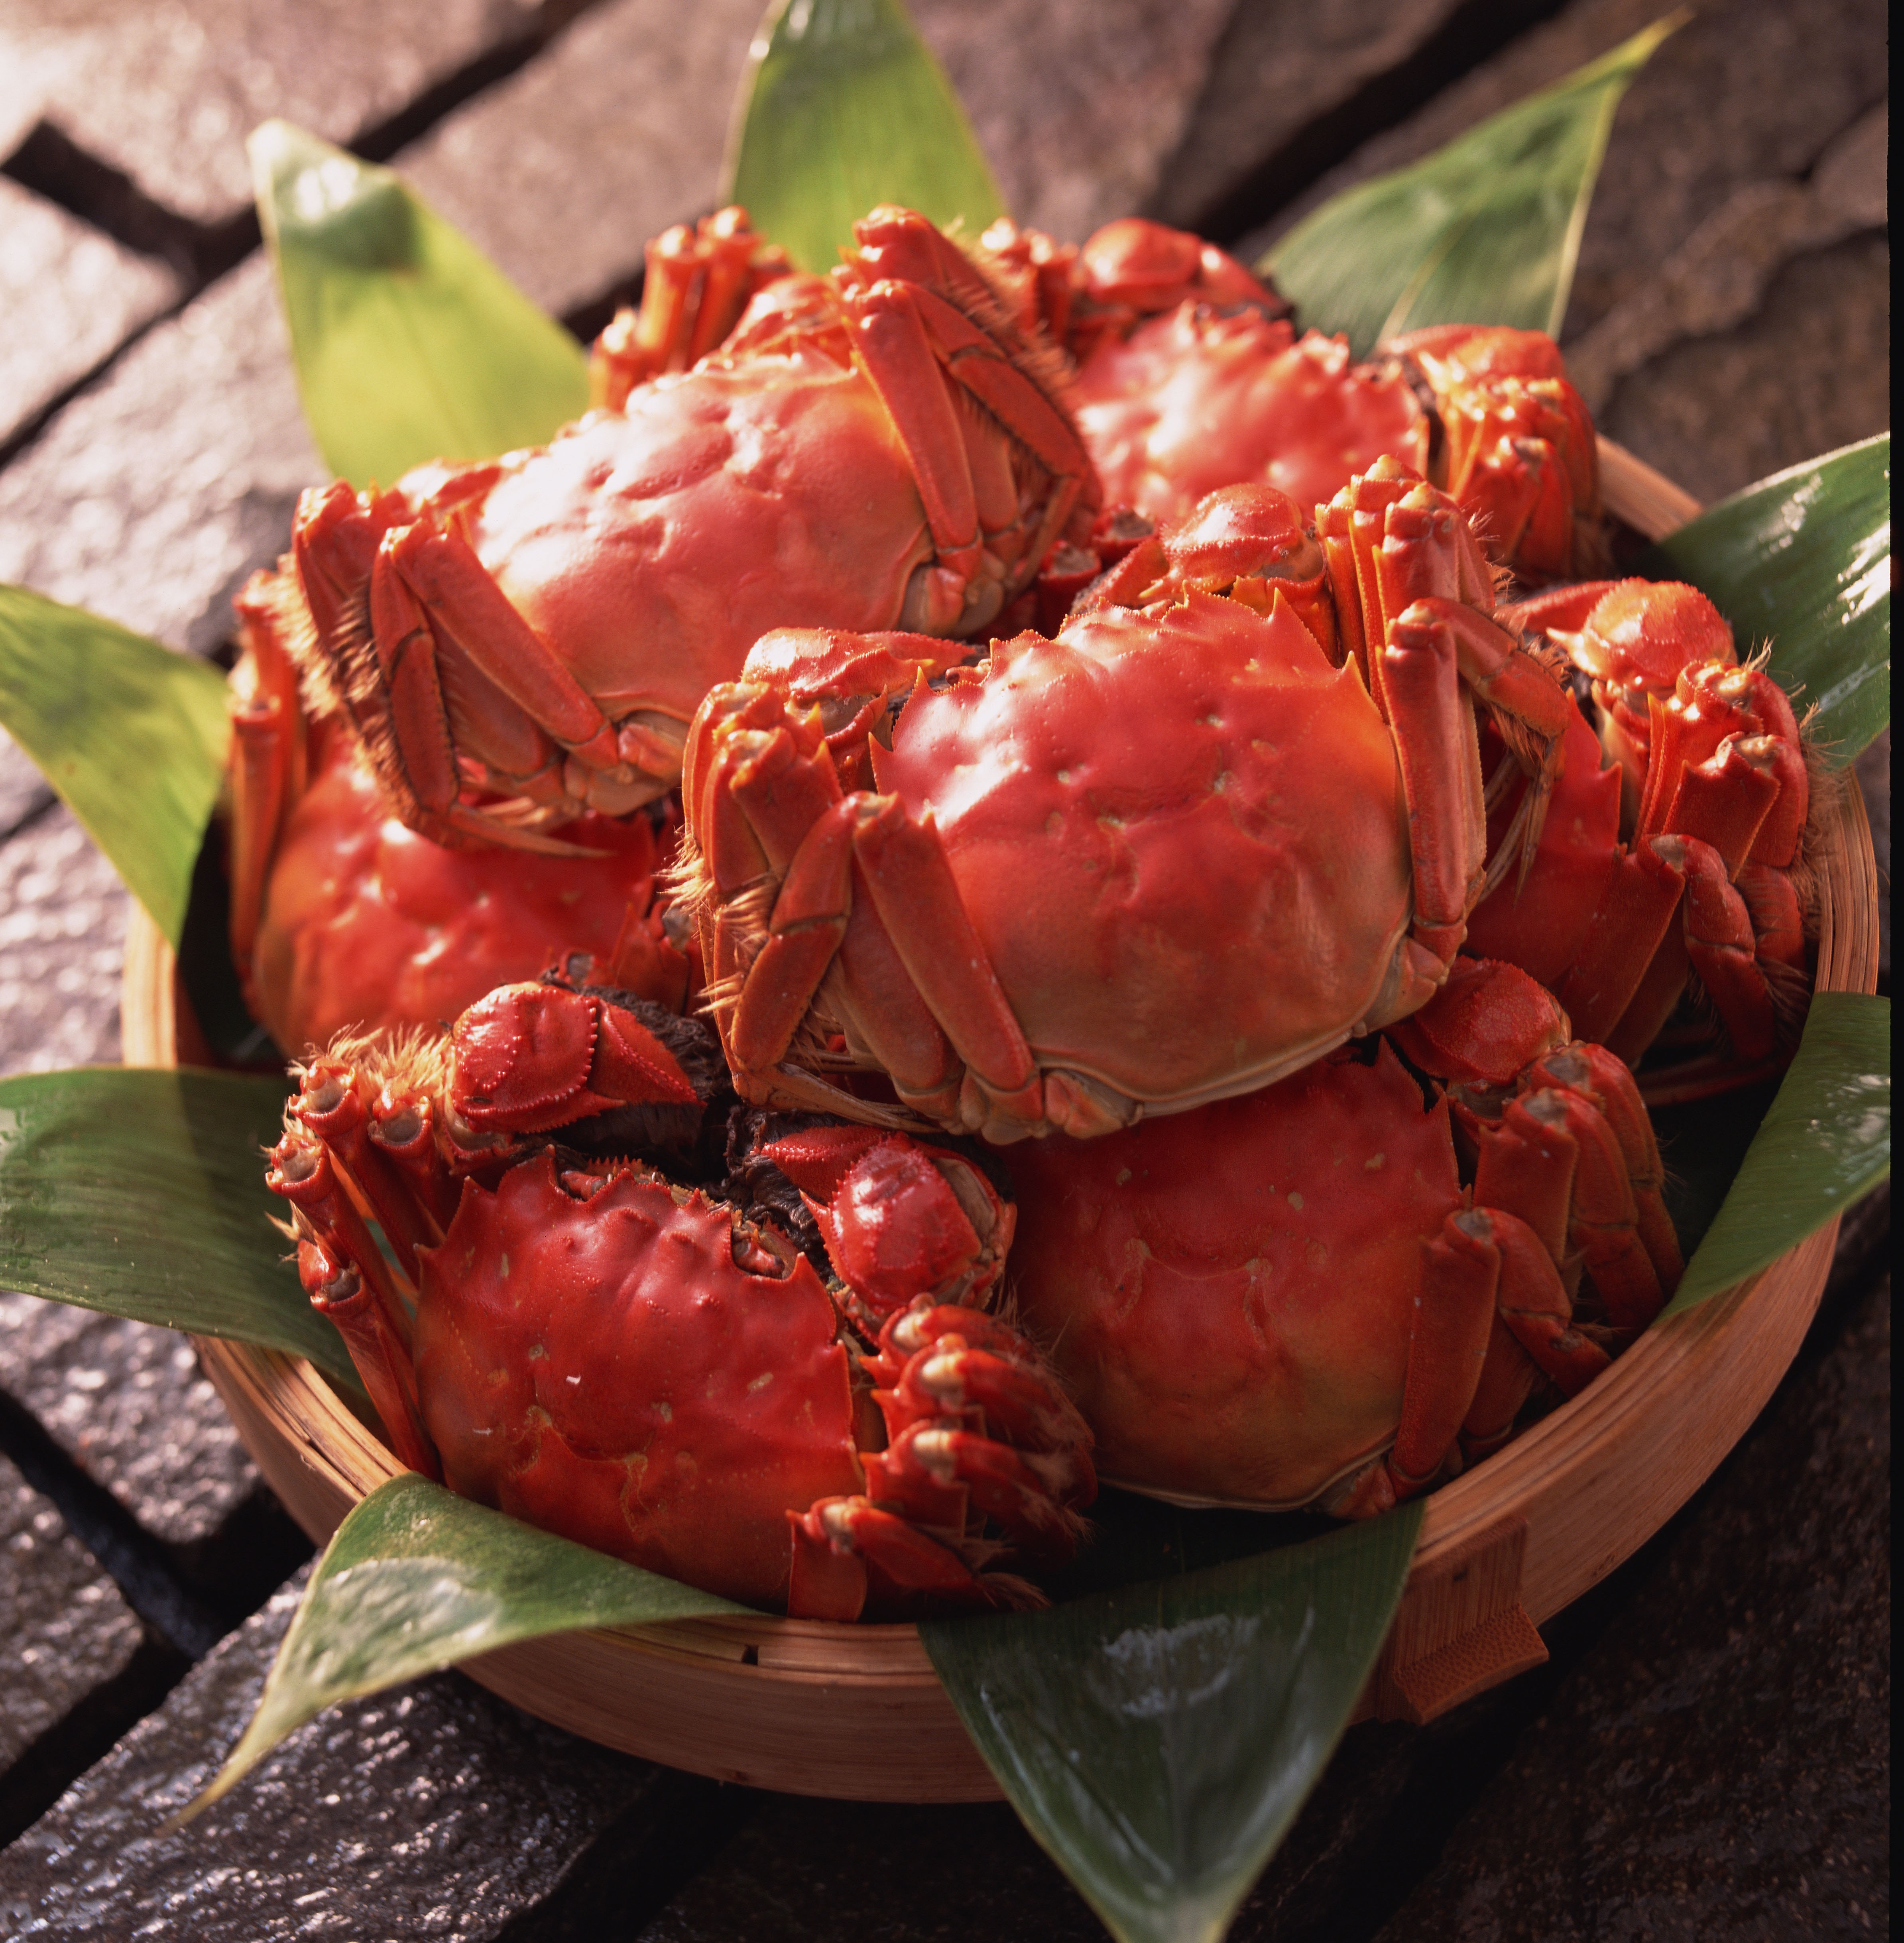 上海で最も名高い上海蟹料理店の老舗が再来日 王宝和大酒店 上海蟹フェア 開催 株式会社ニュー オータニのプレスリリース